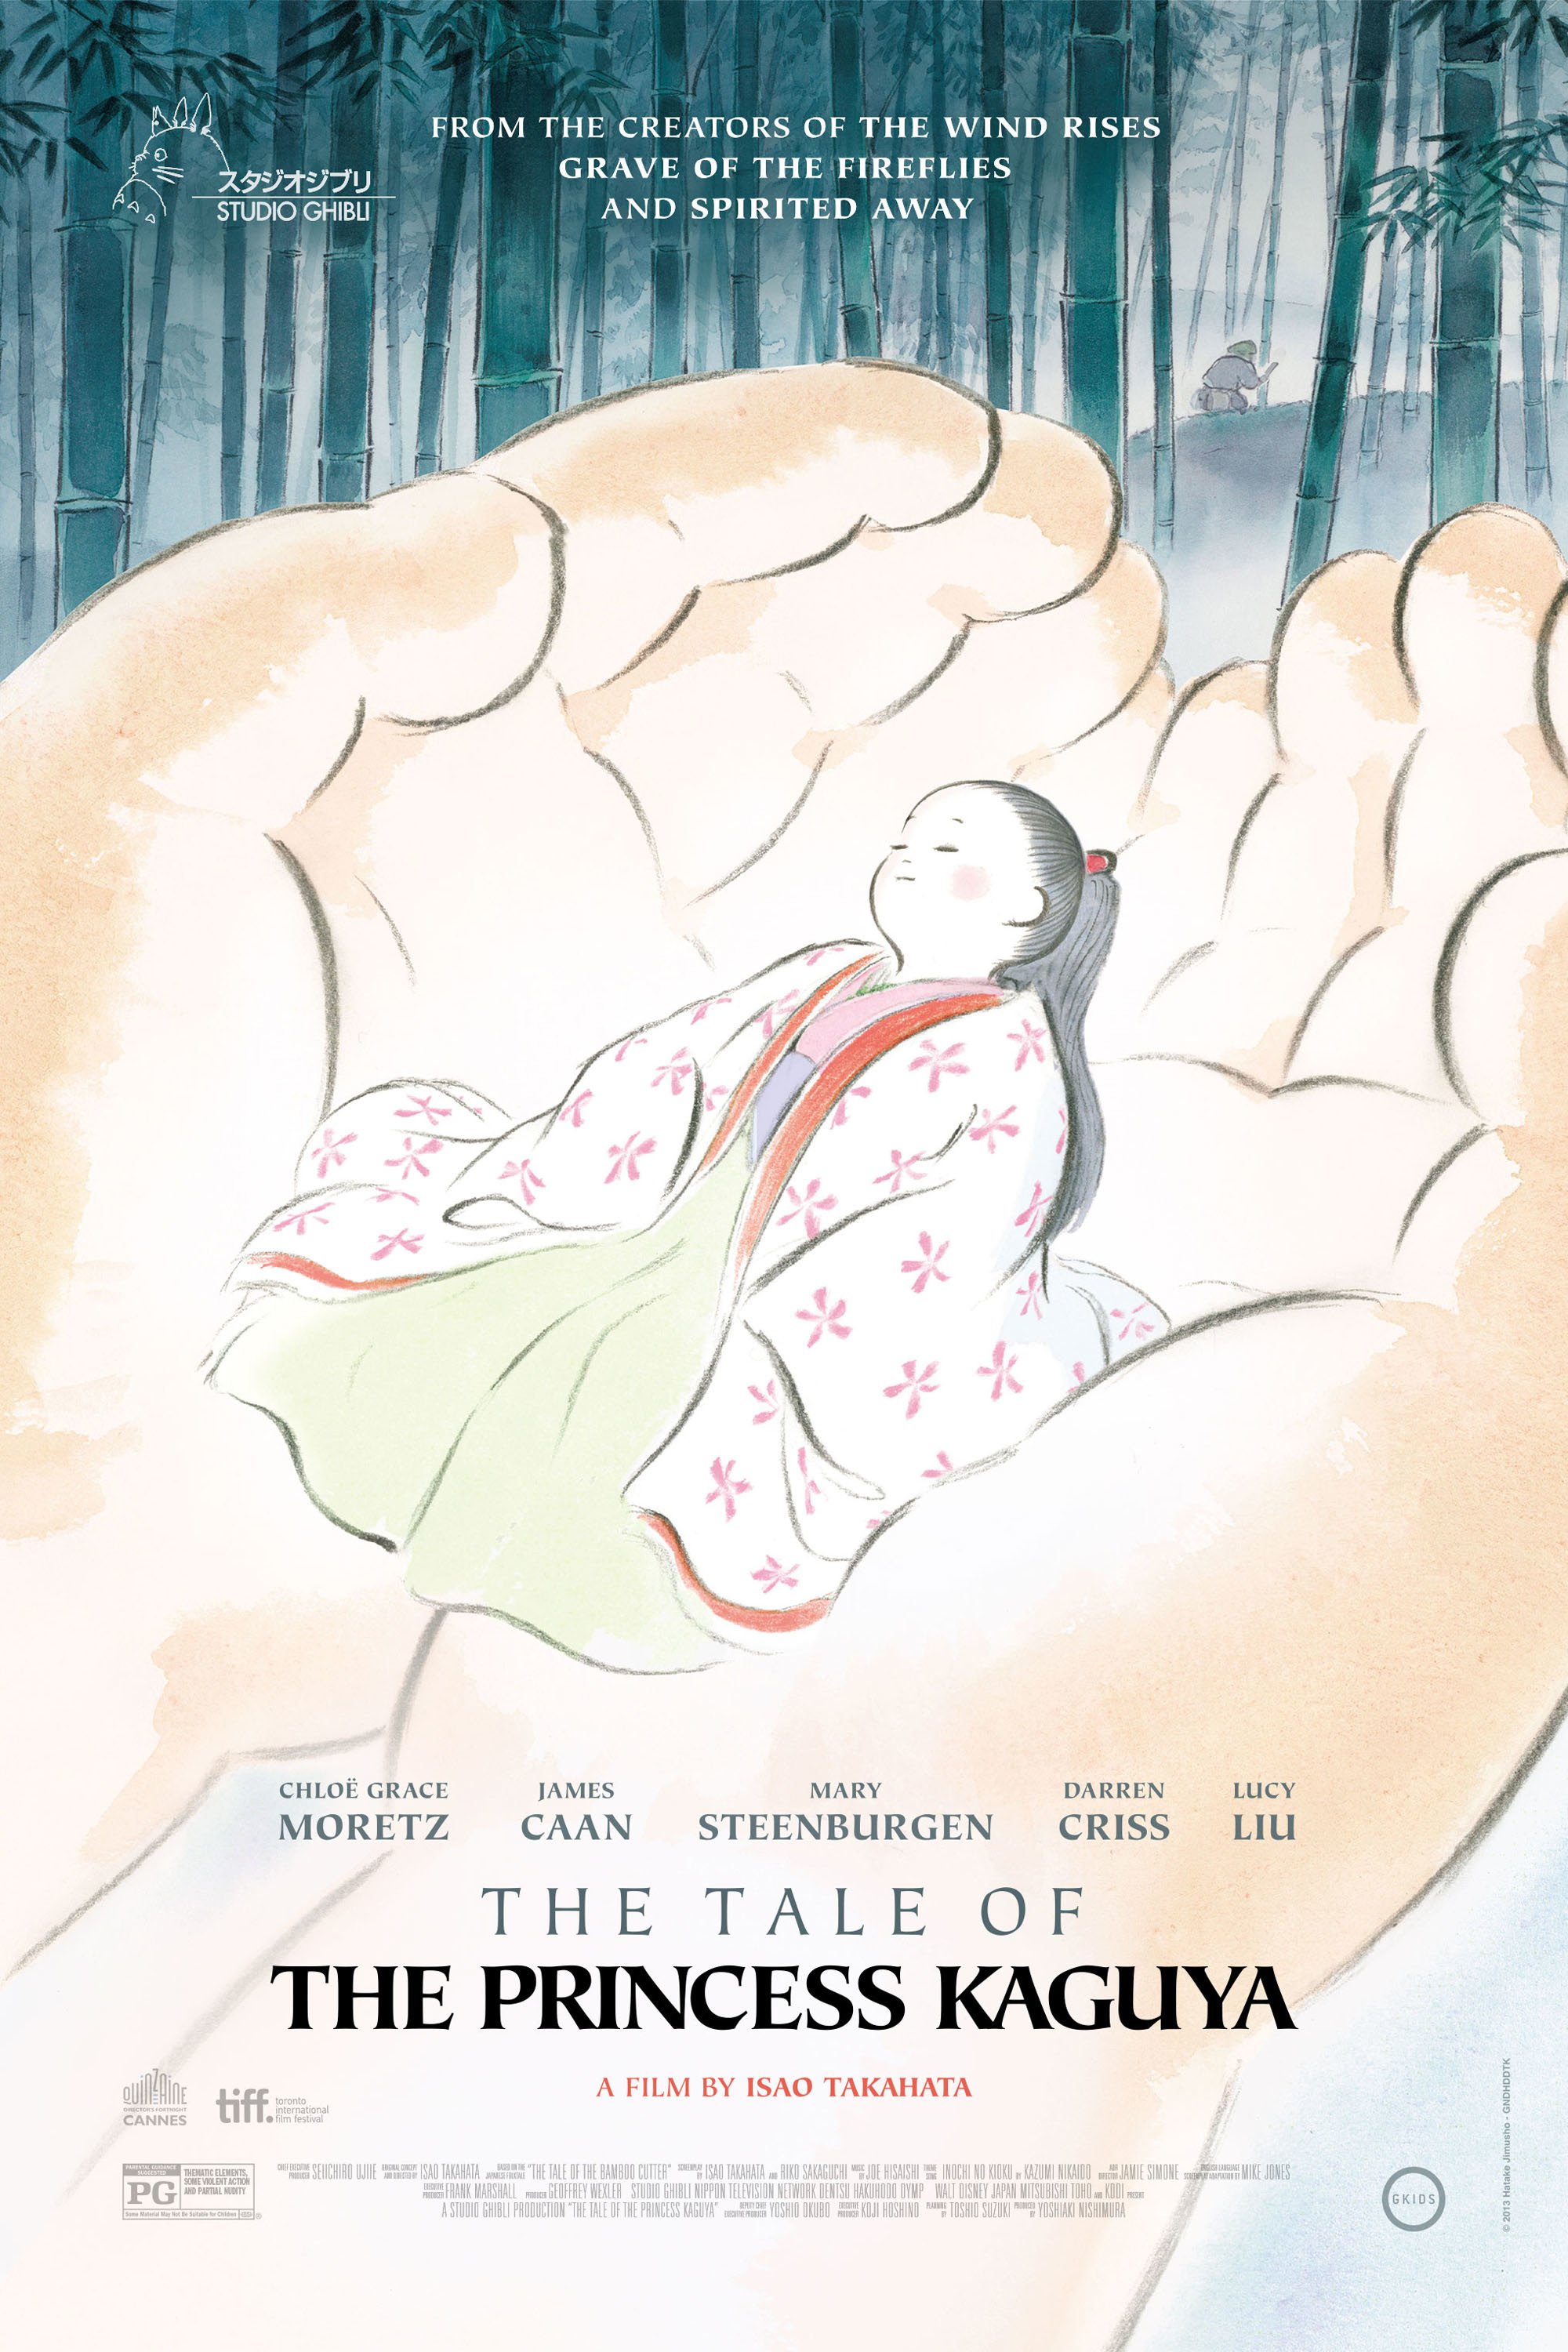 The Tale of The Princess Kaguya (Kaguyahime no monogatari)